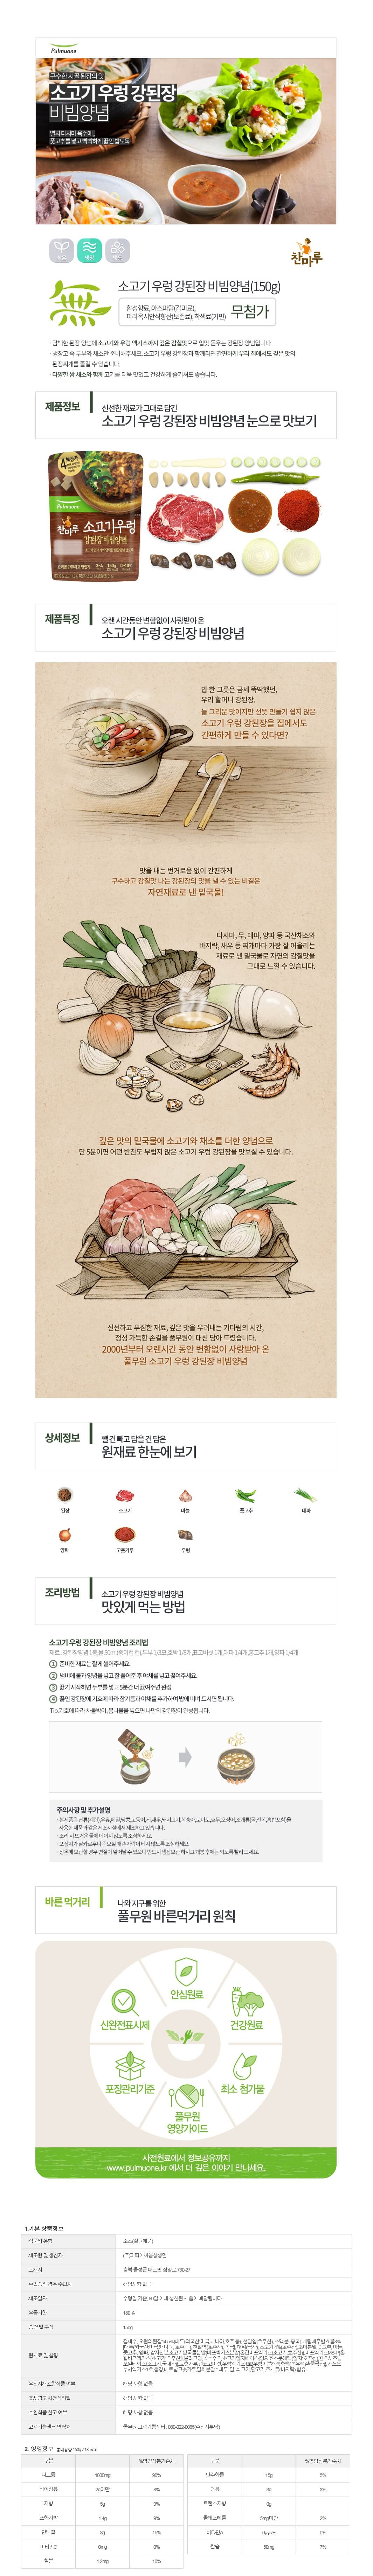 韓國食品-[풀무원] 소고기우렁강된장비빔양념 150g